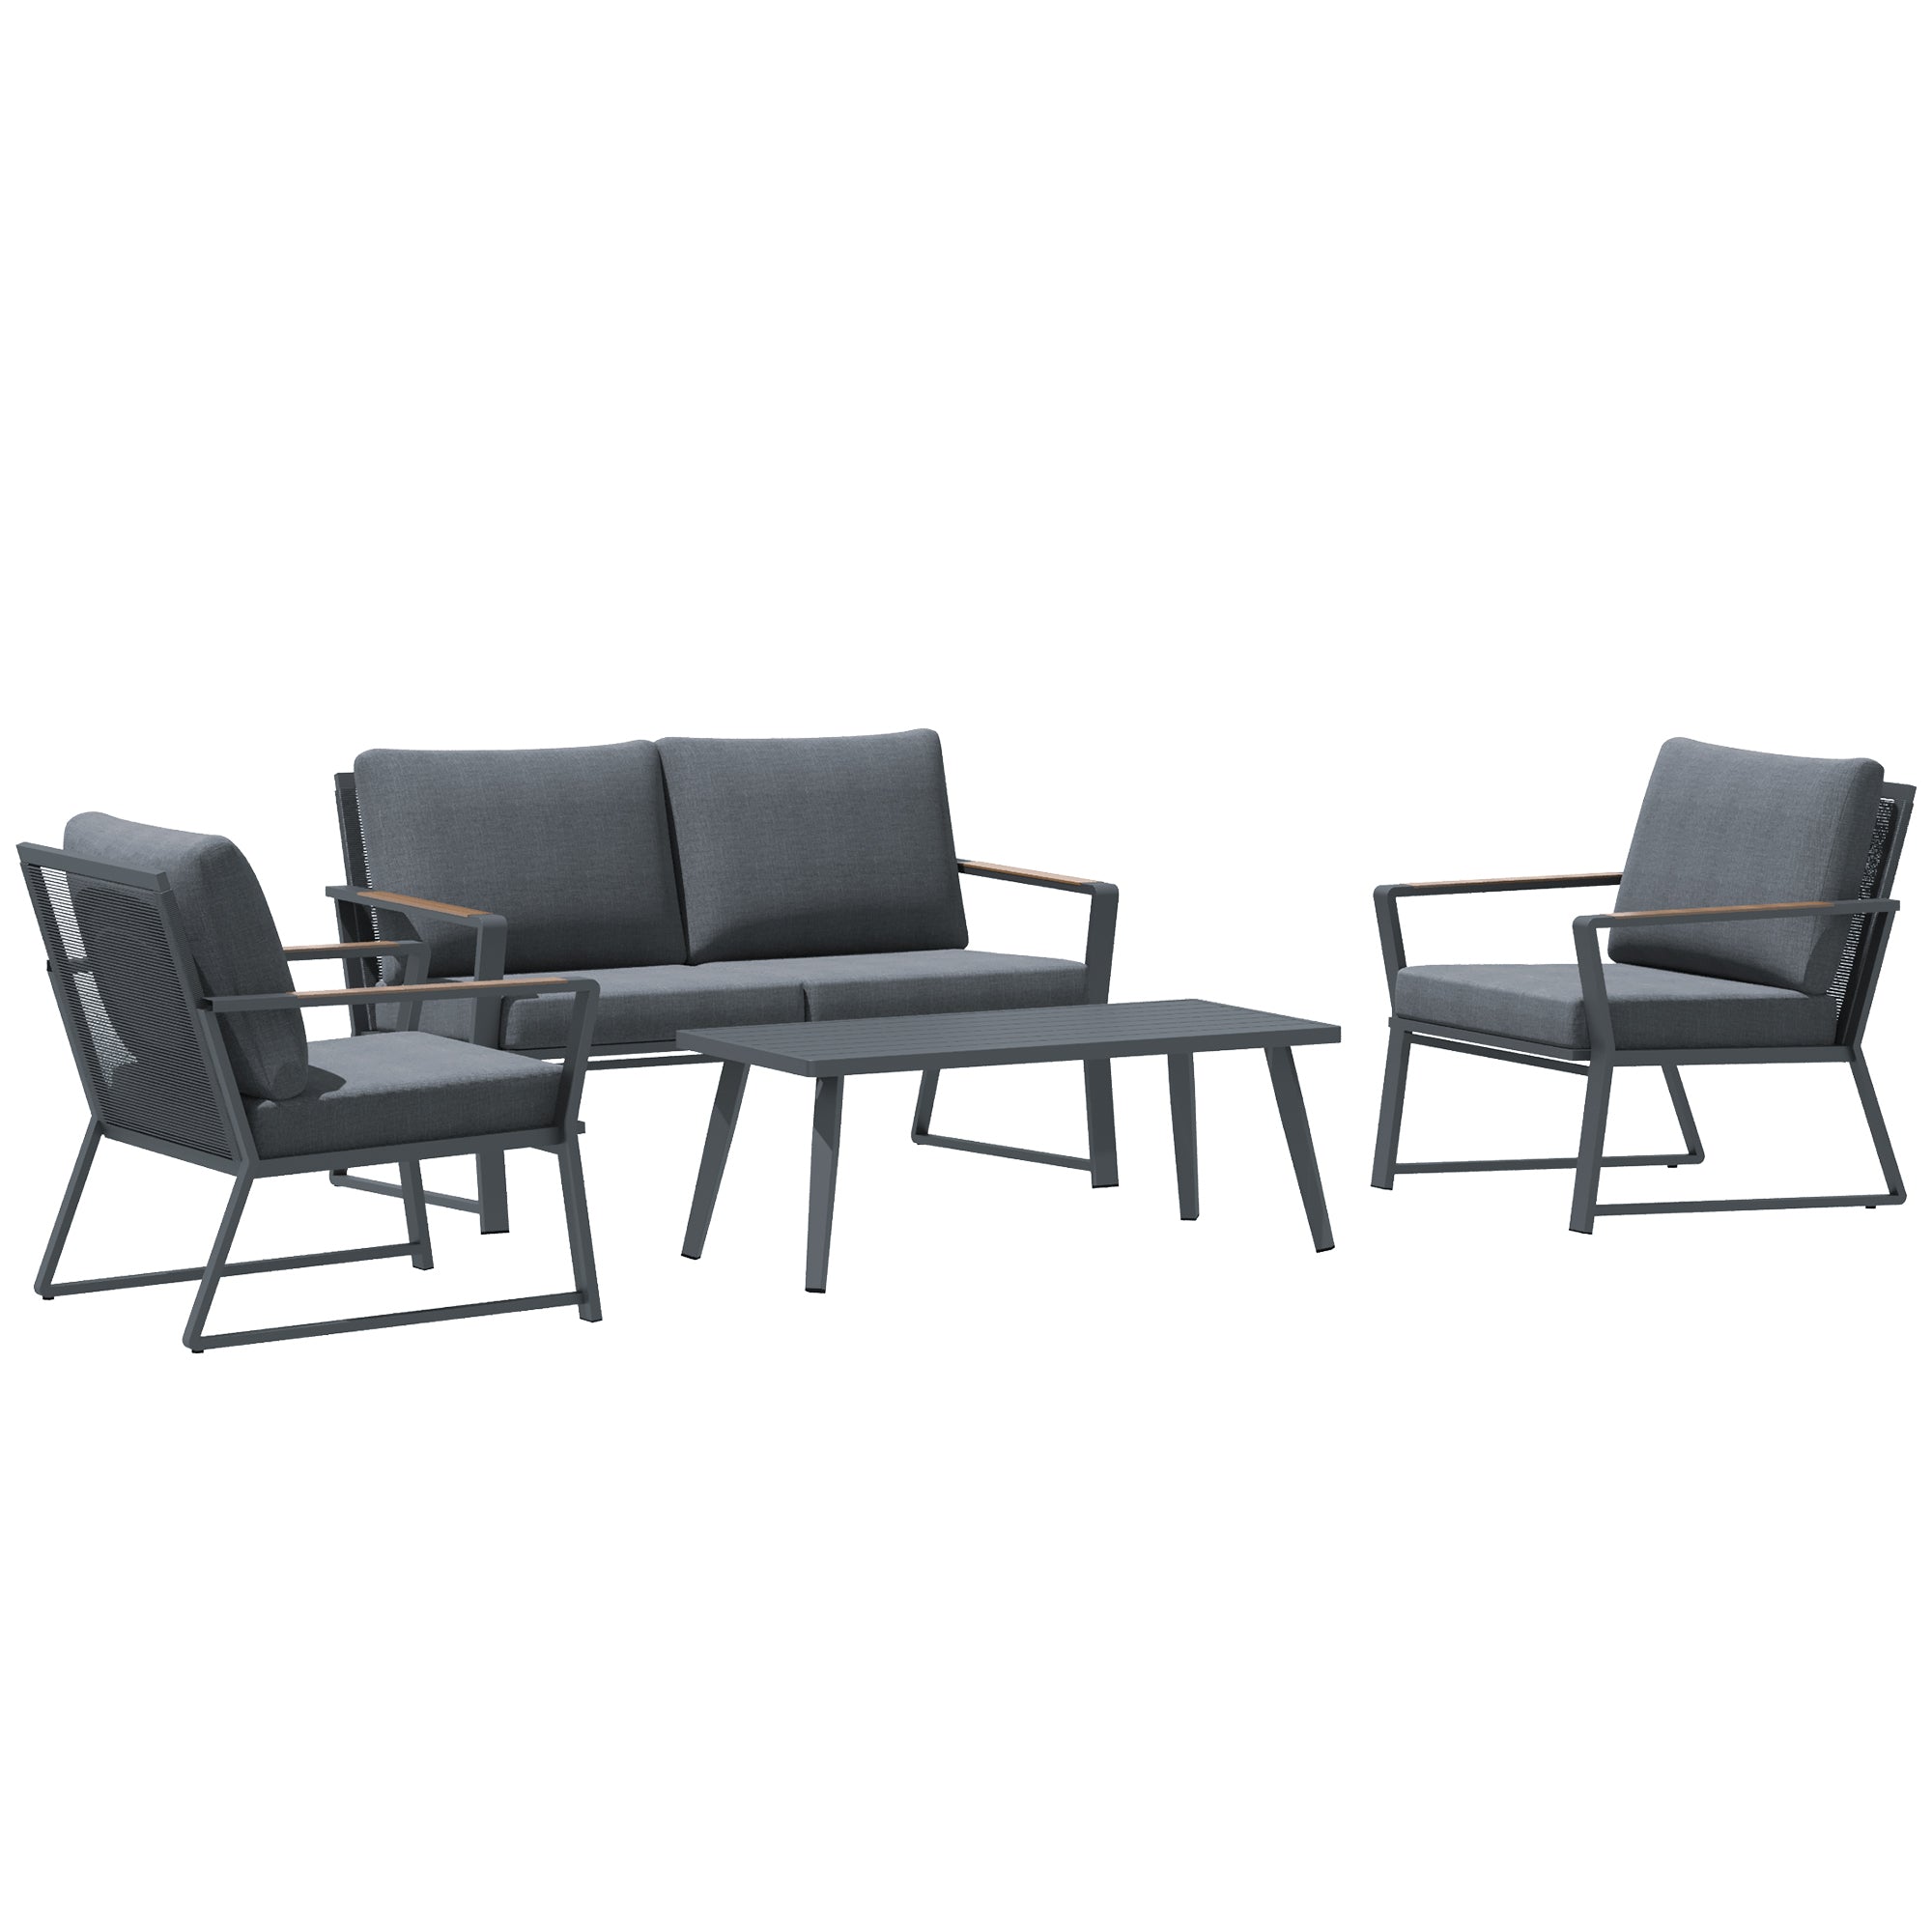 4 Piece Patio Furniture Set, Aluminum Conversation gray-aluminium